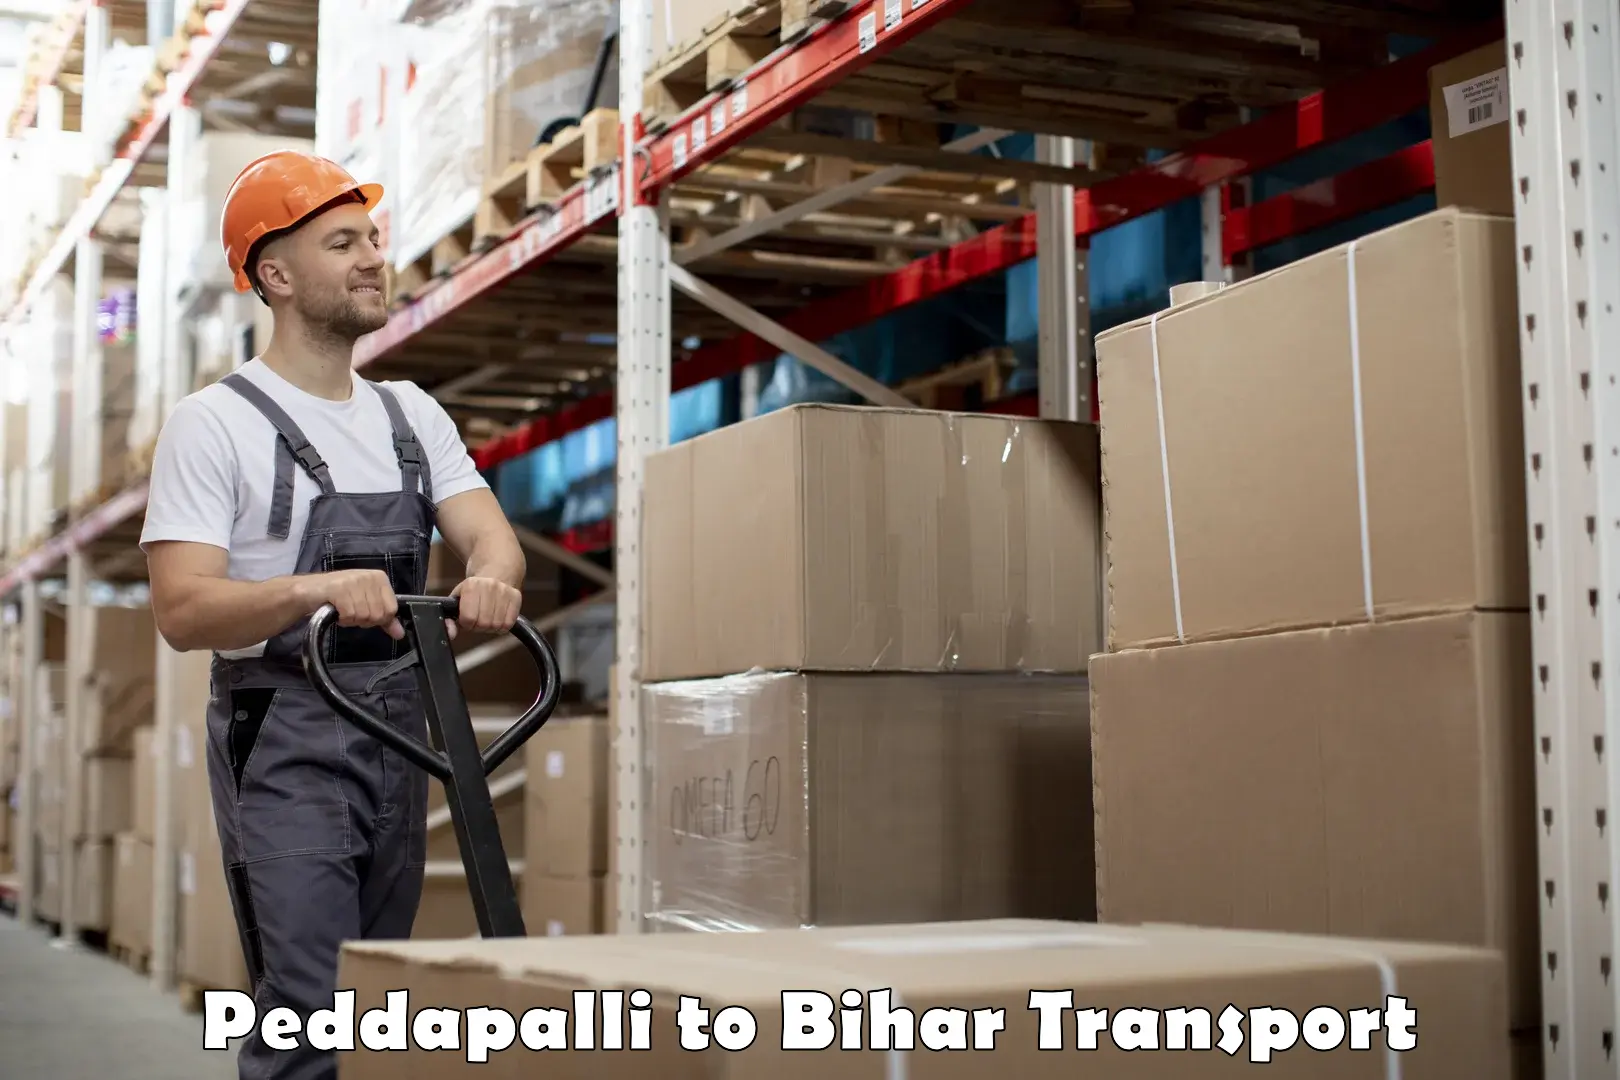 Delivery service Peddapalli to Bihar